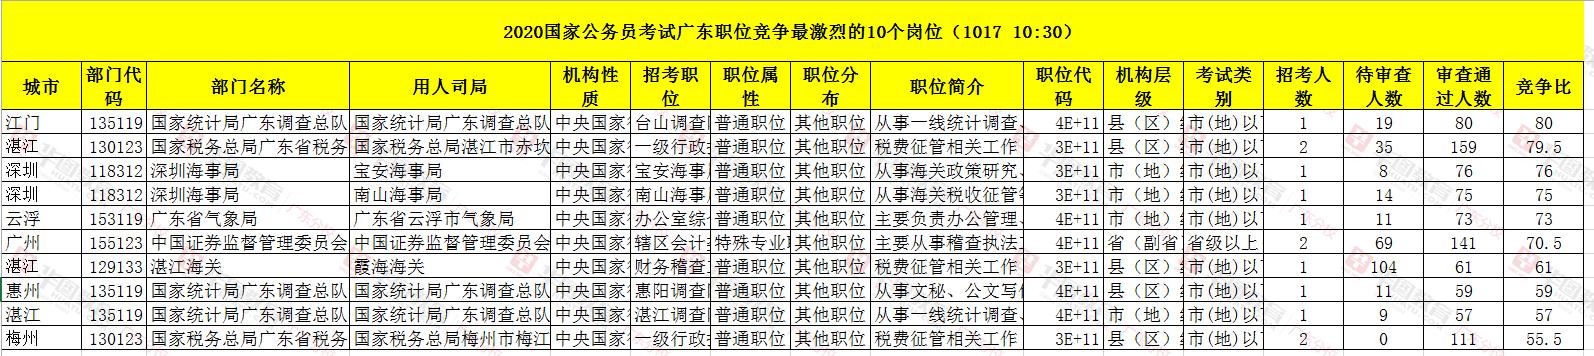 2020国考广东报考人数最多的岗位